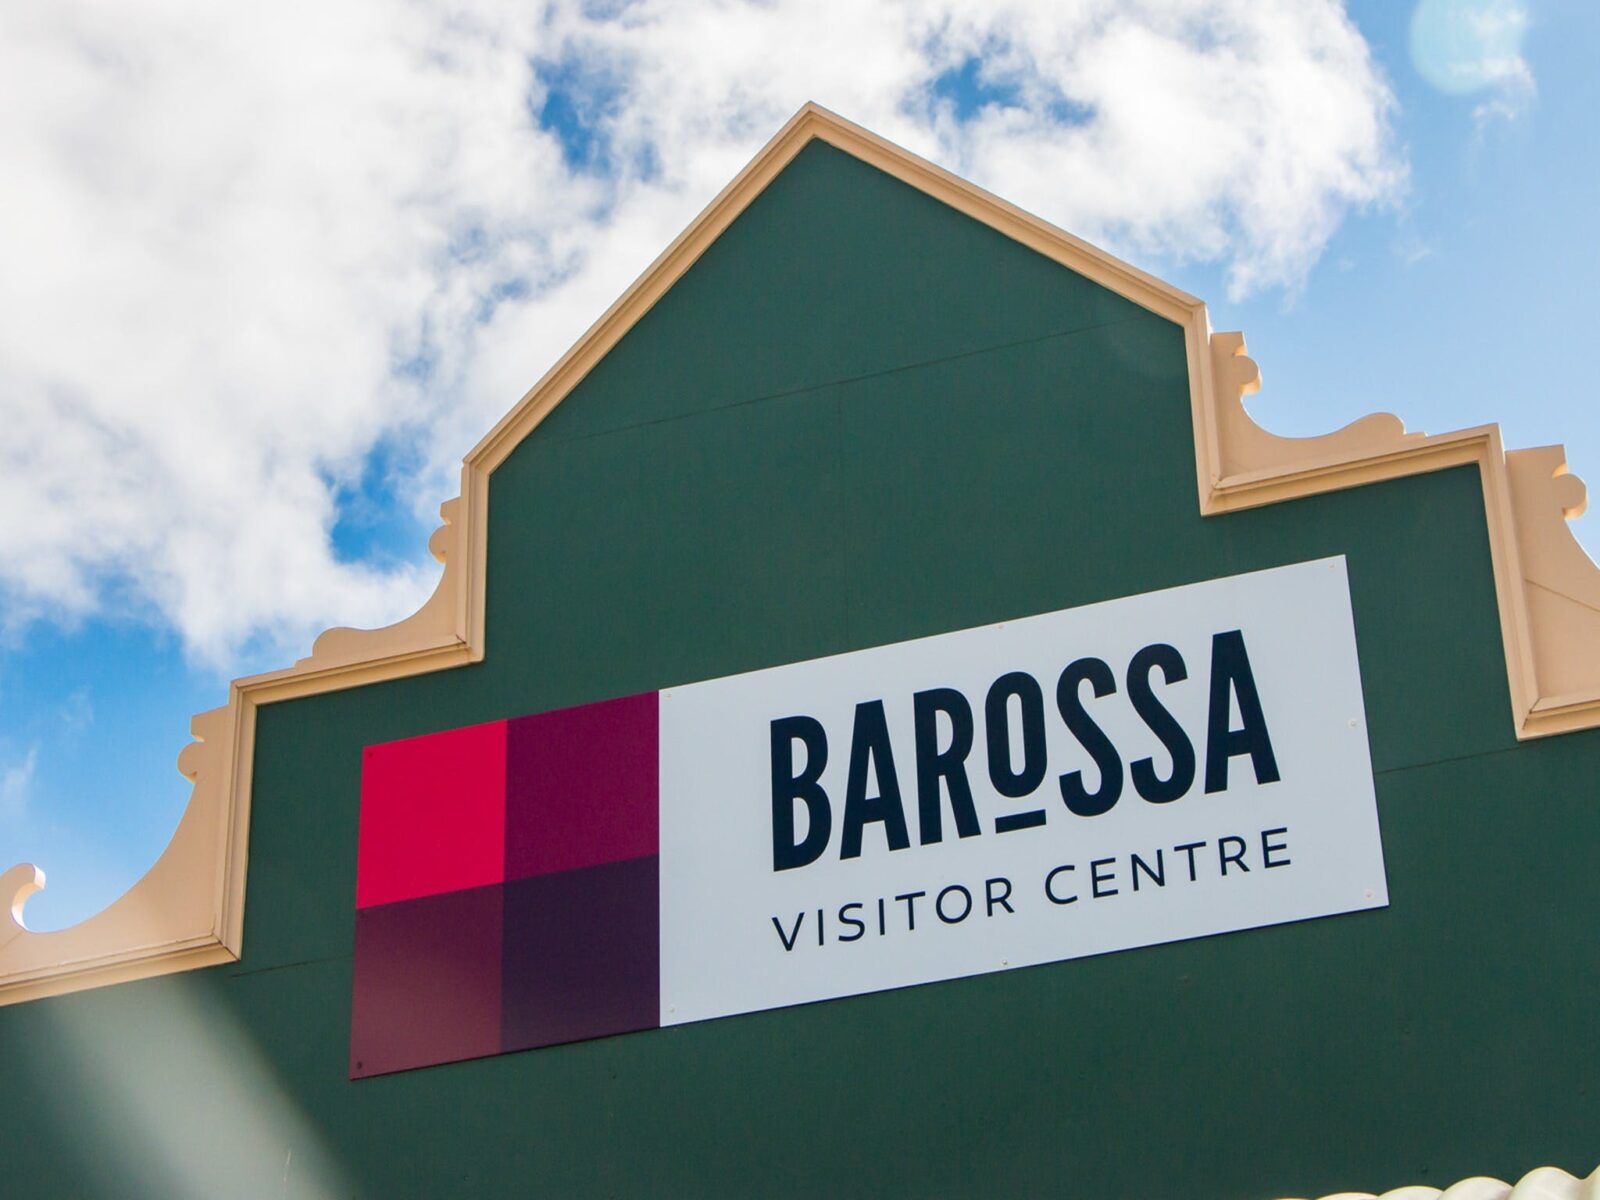 Barossa Visitor Centre